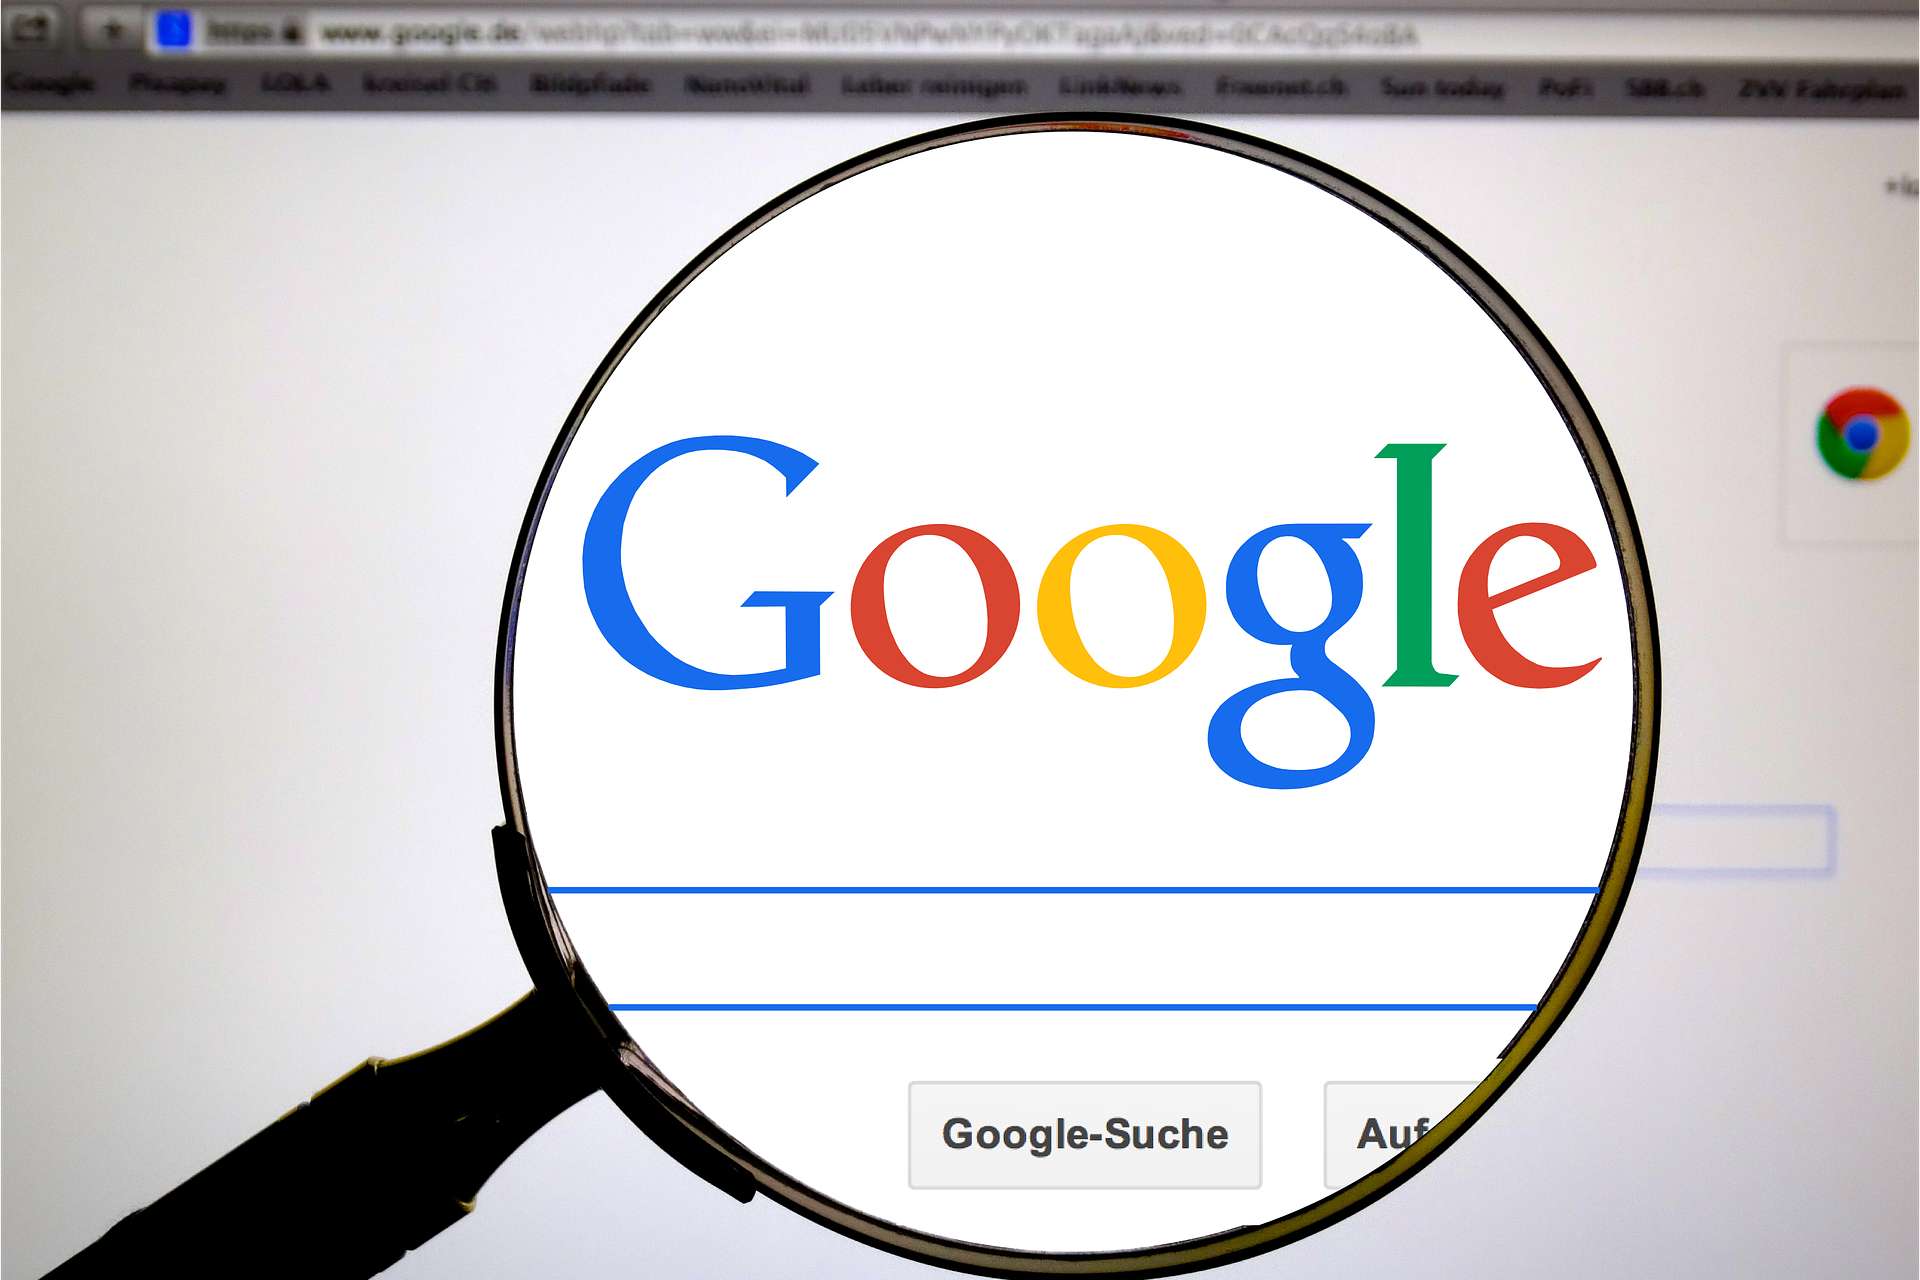 Google je najmoćniji pretraživač na internetu